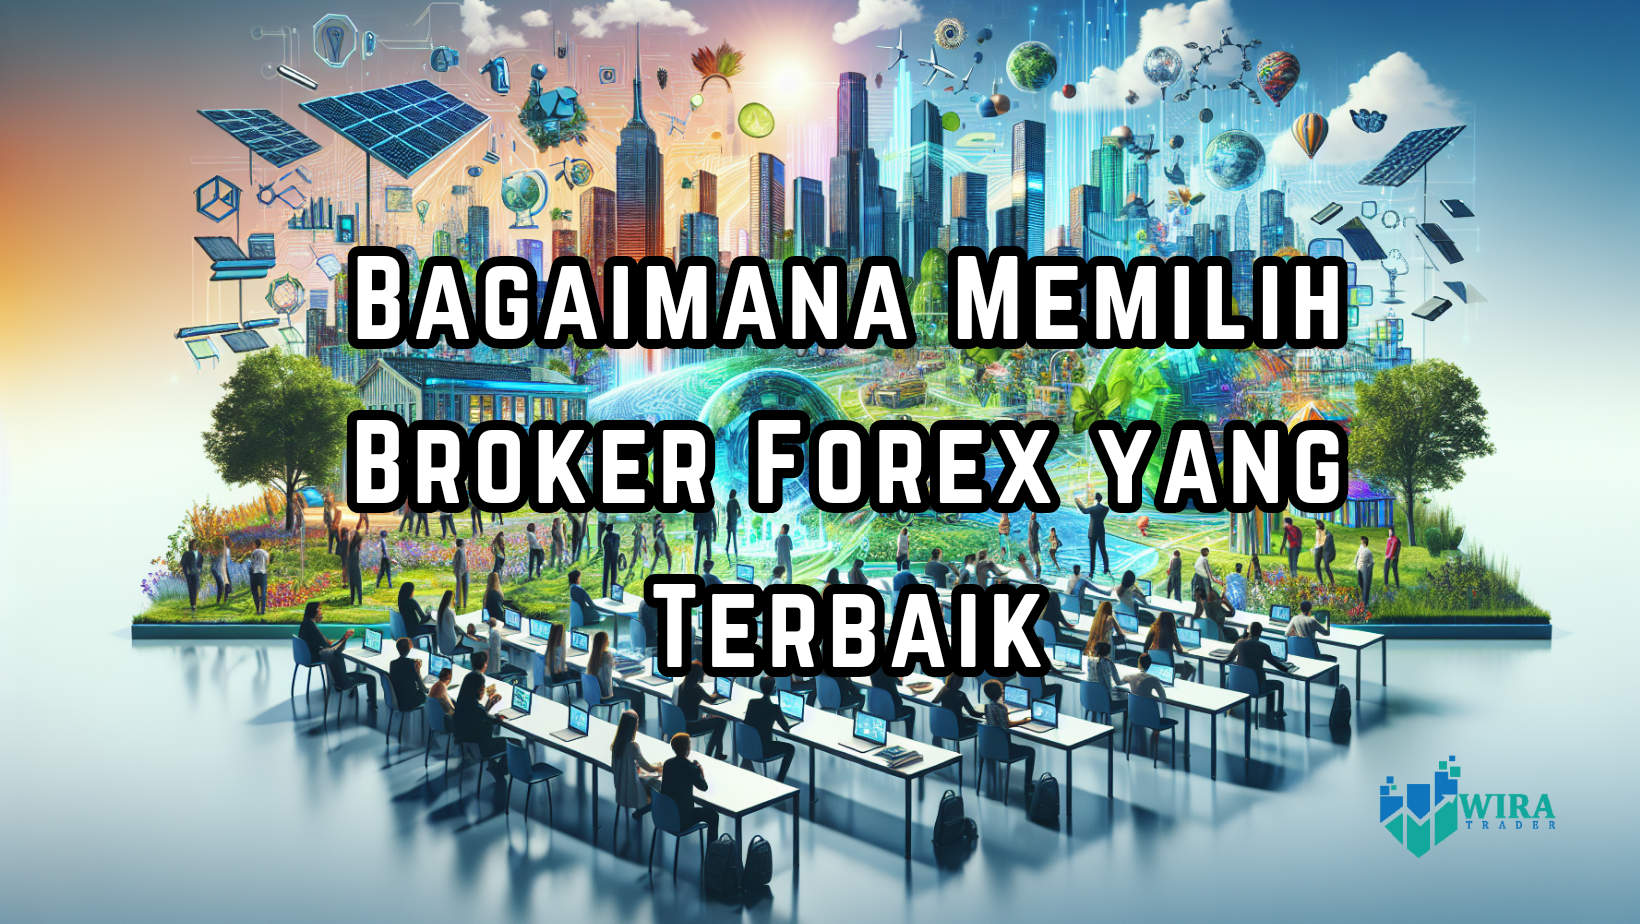 You are currently viewing Bagaimana Memilih Broker Forex yang Terbaik